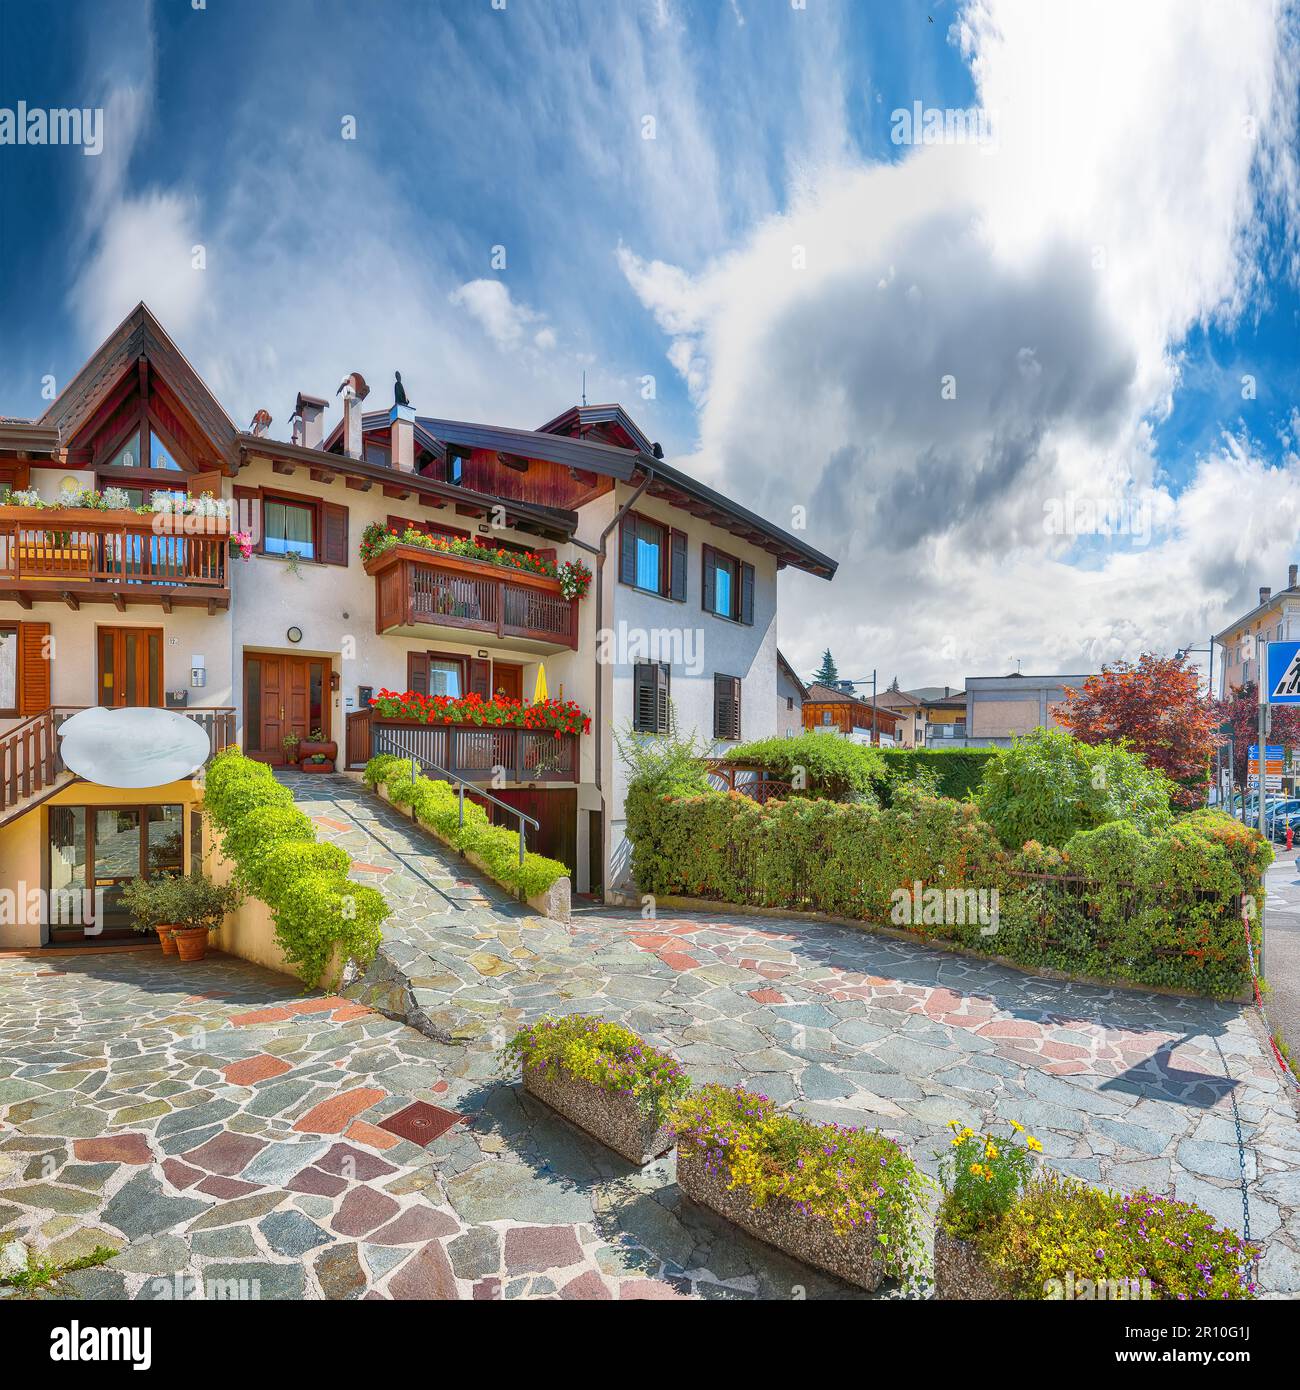 Tolle Aussicht auf traditionelle alpine Häuser mit Blumen auf dem Balkon der Stadt Cles. Standort: Cles, Region Trentino-Südtirol, Italien, Europa Stockfoto